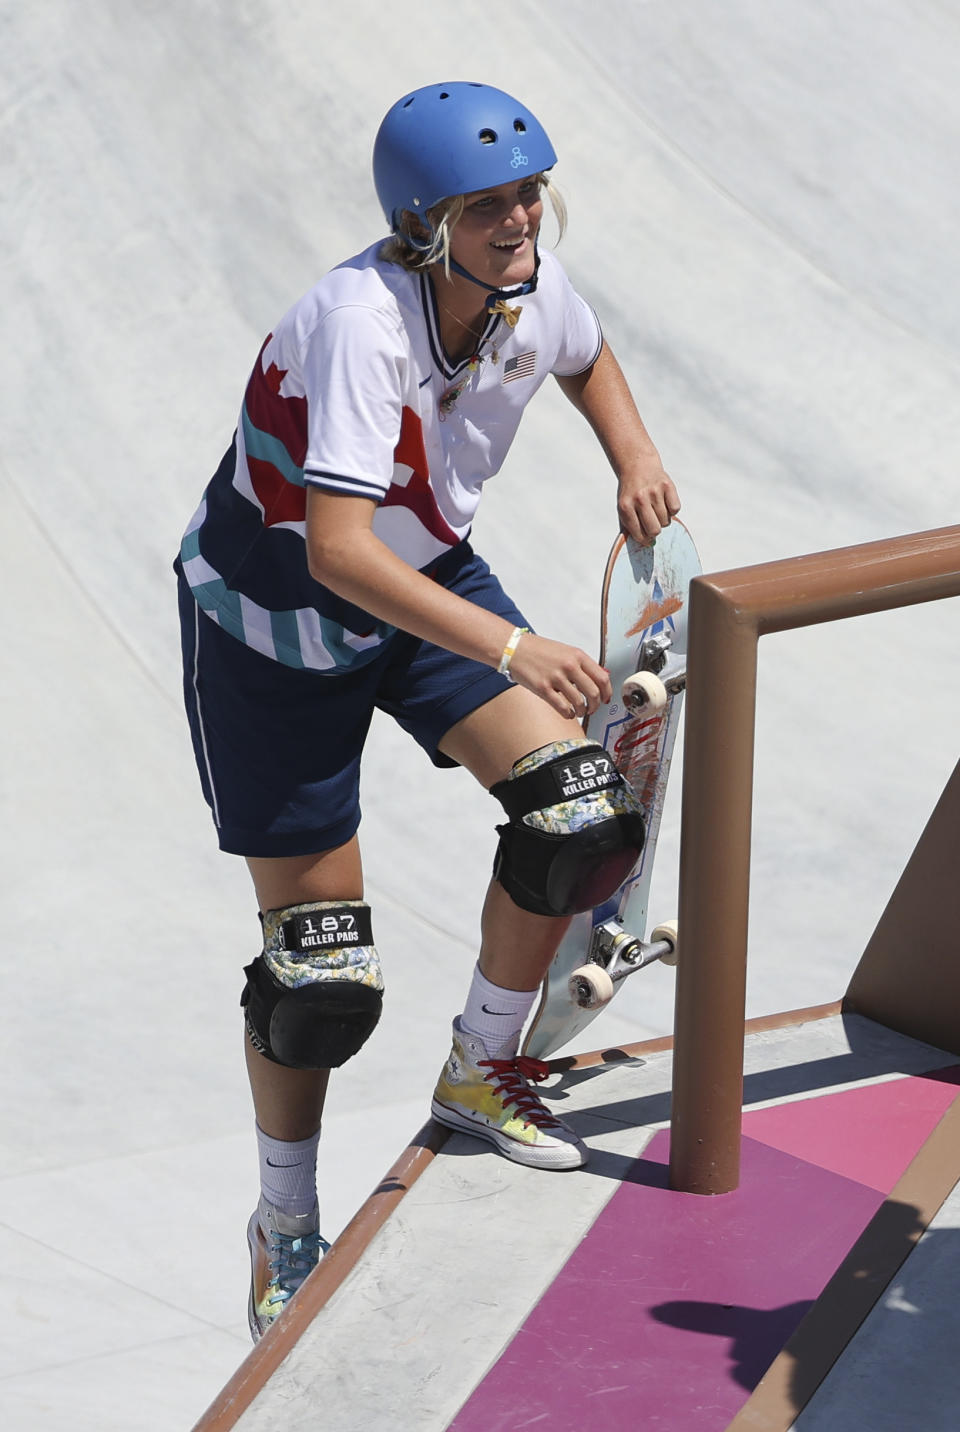 Wettstein of USA during the Women's Park Skateboarding Final